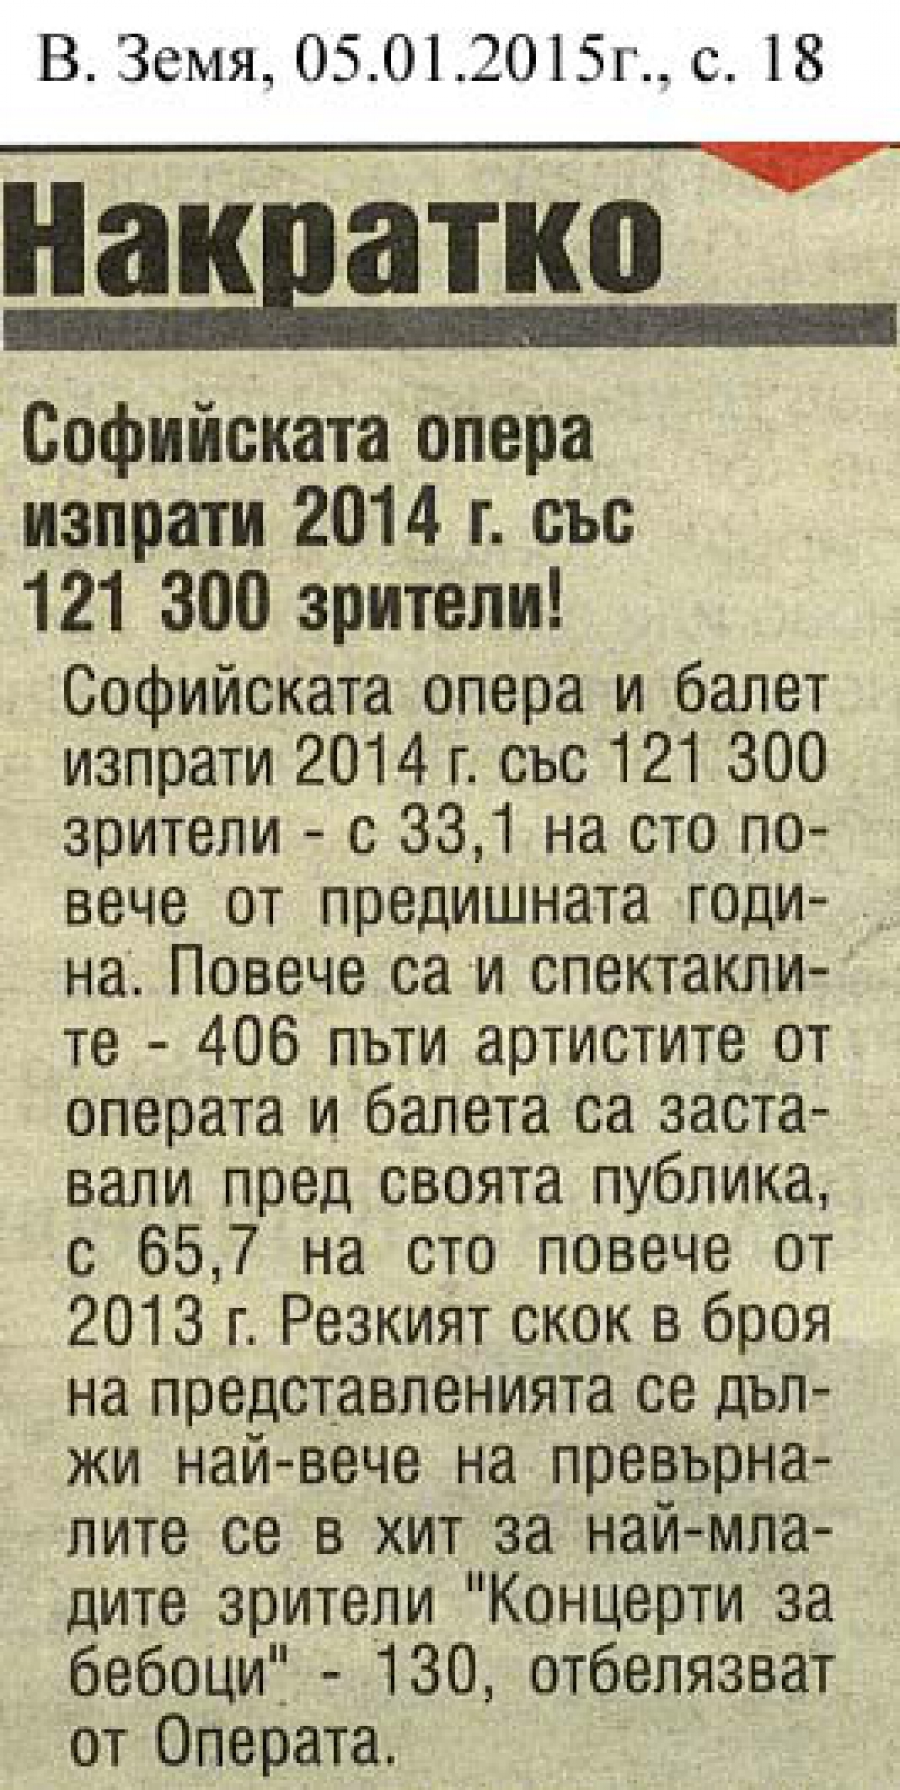 Софийската опера изпрати 2014 с 121 300 зрители! - в. Земя - 05.01.2015